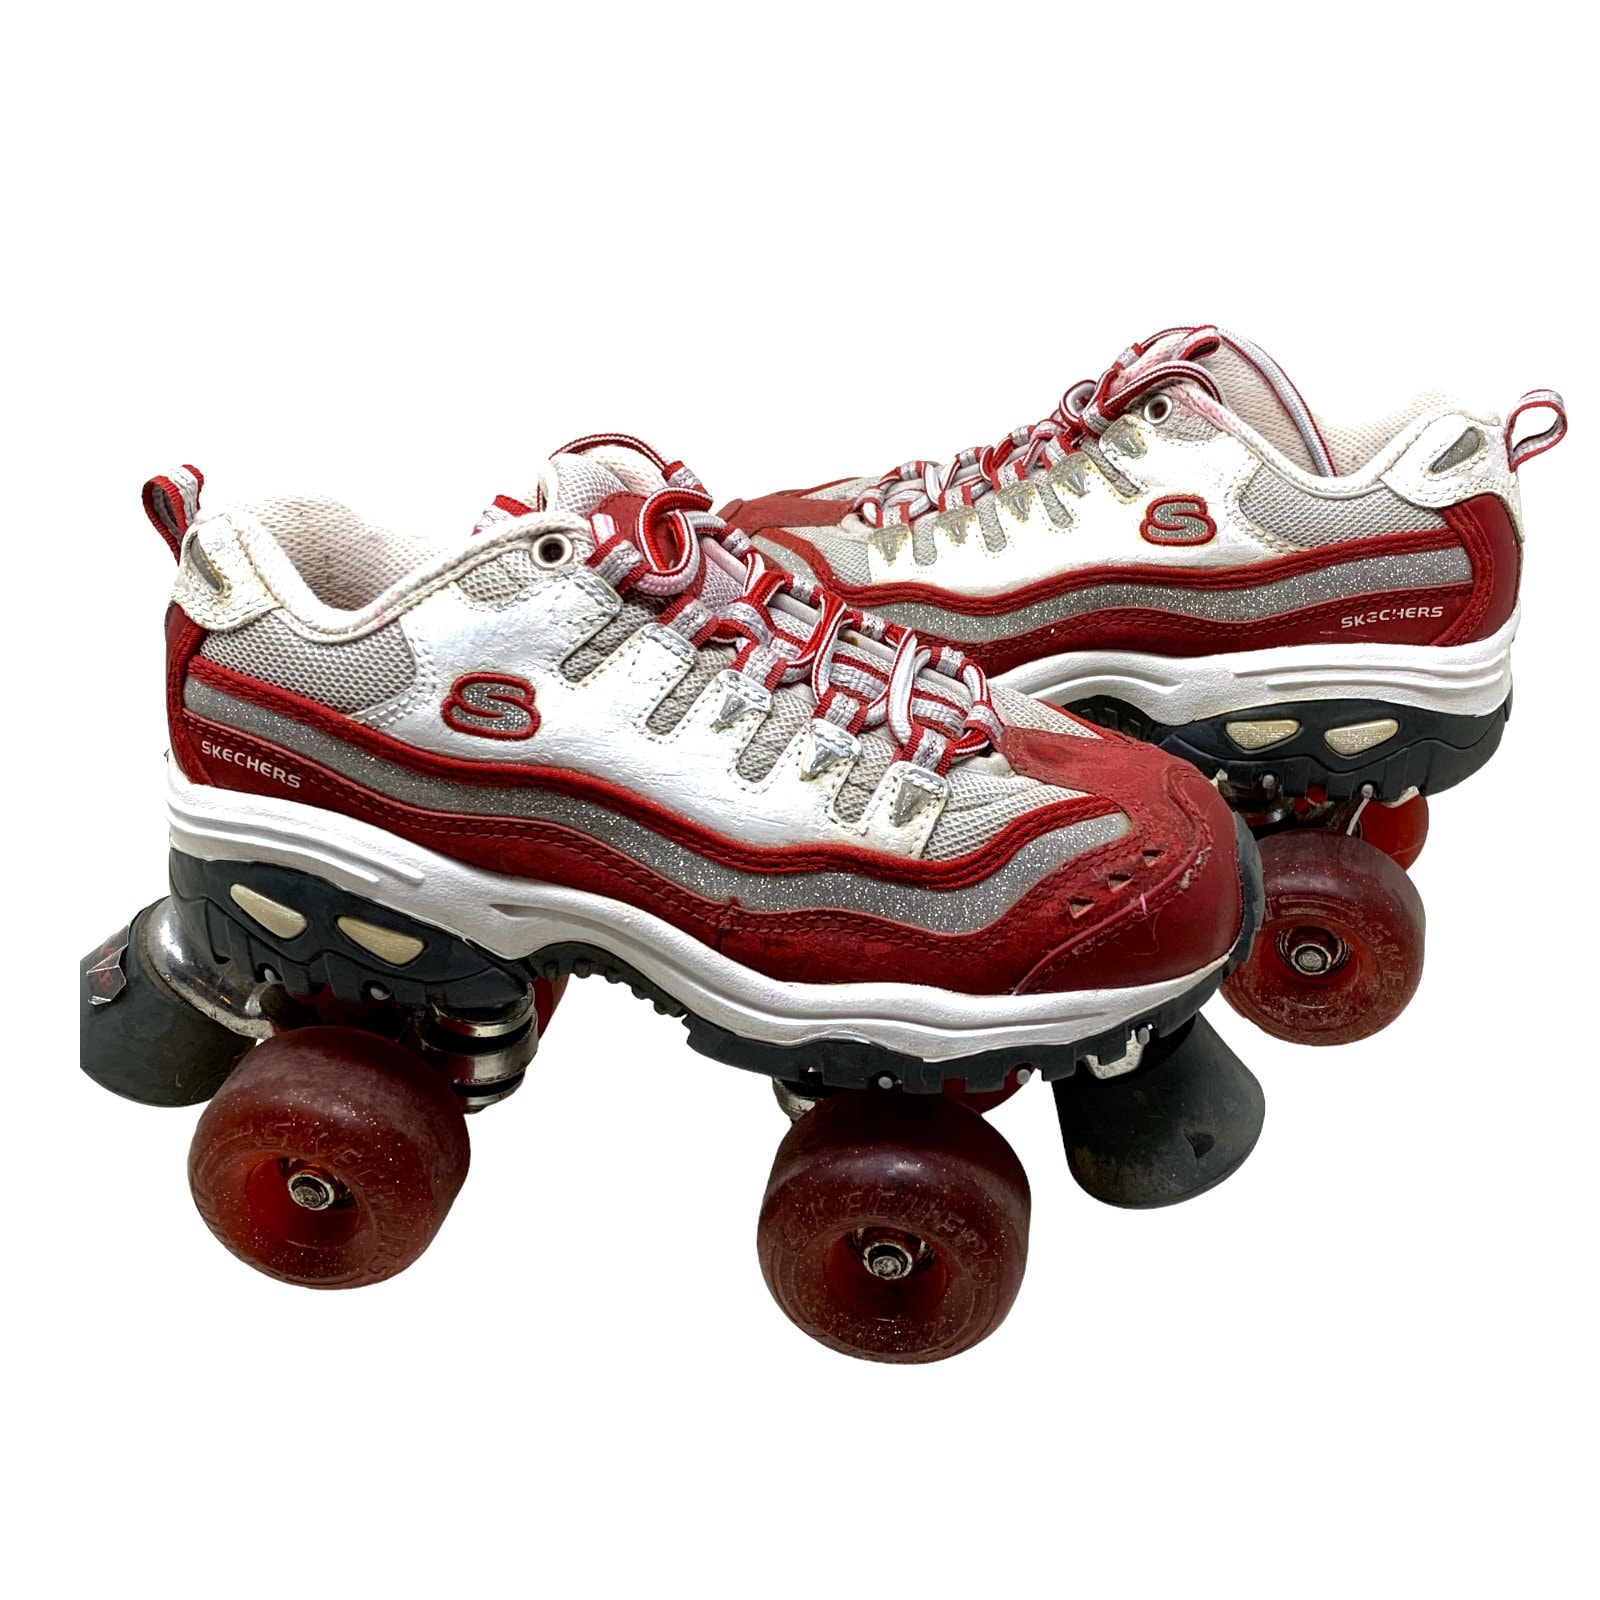 Vtg Skechers Roller Skates 4 Wheelers Sz 6.5 Britney Spears